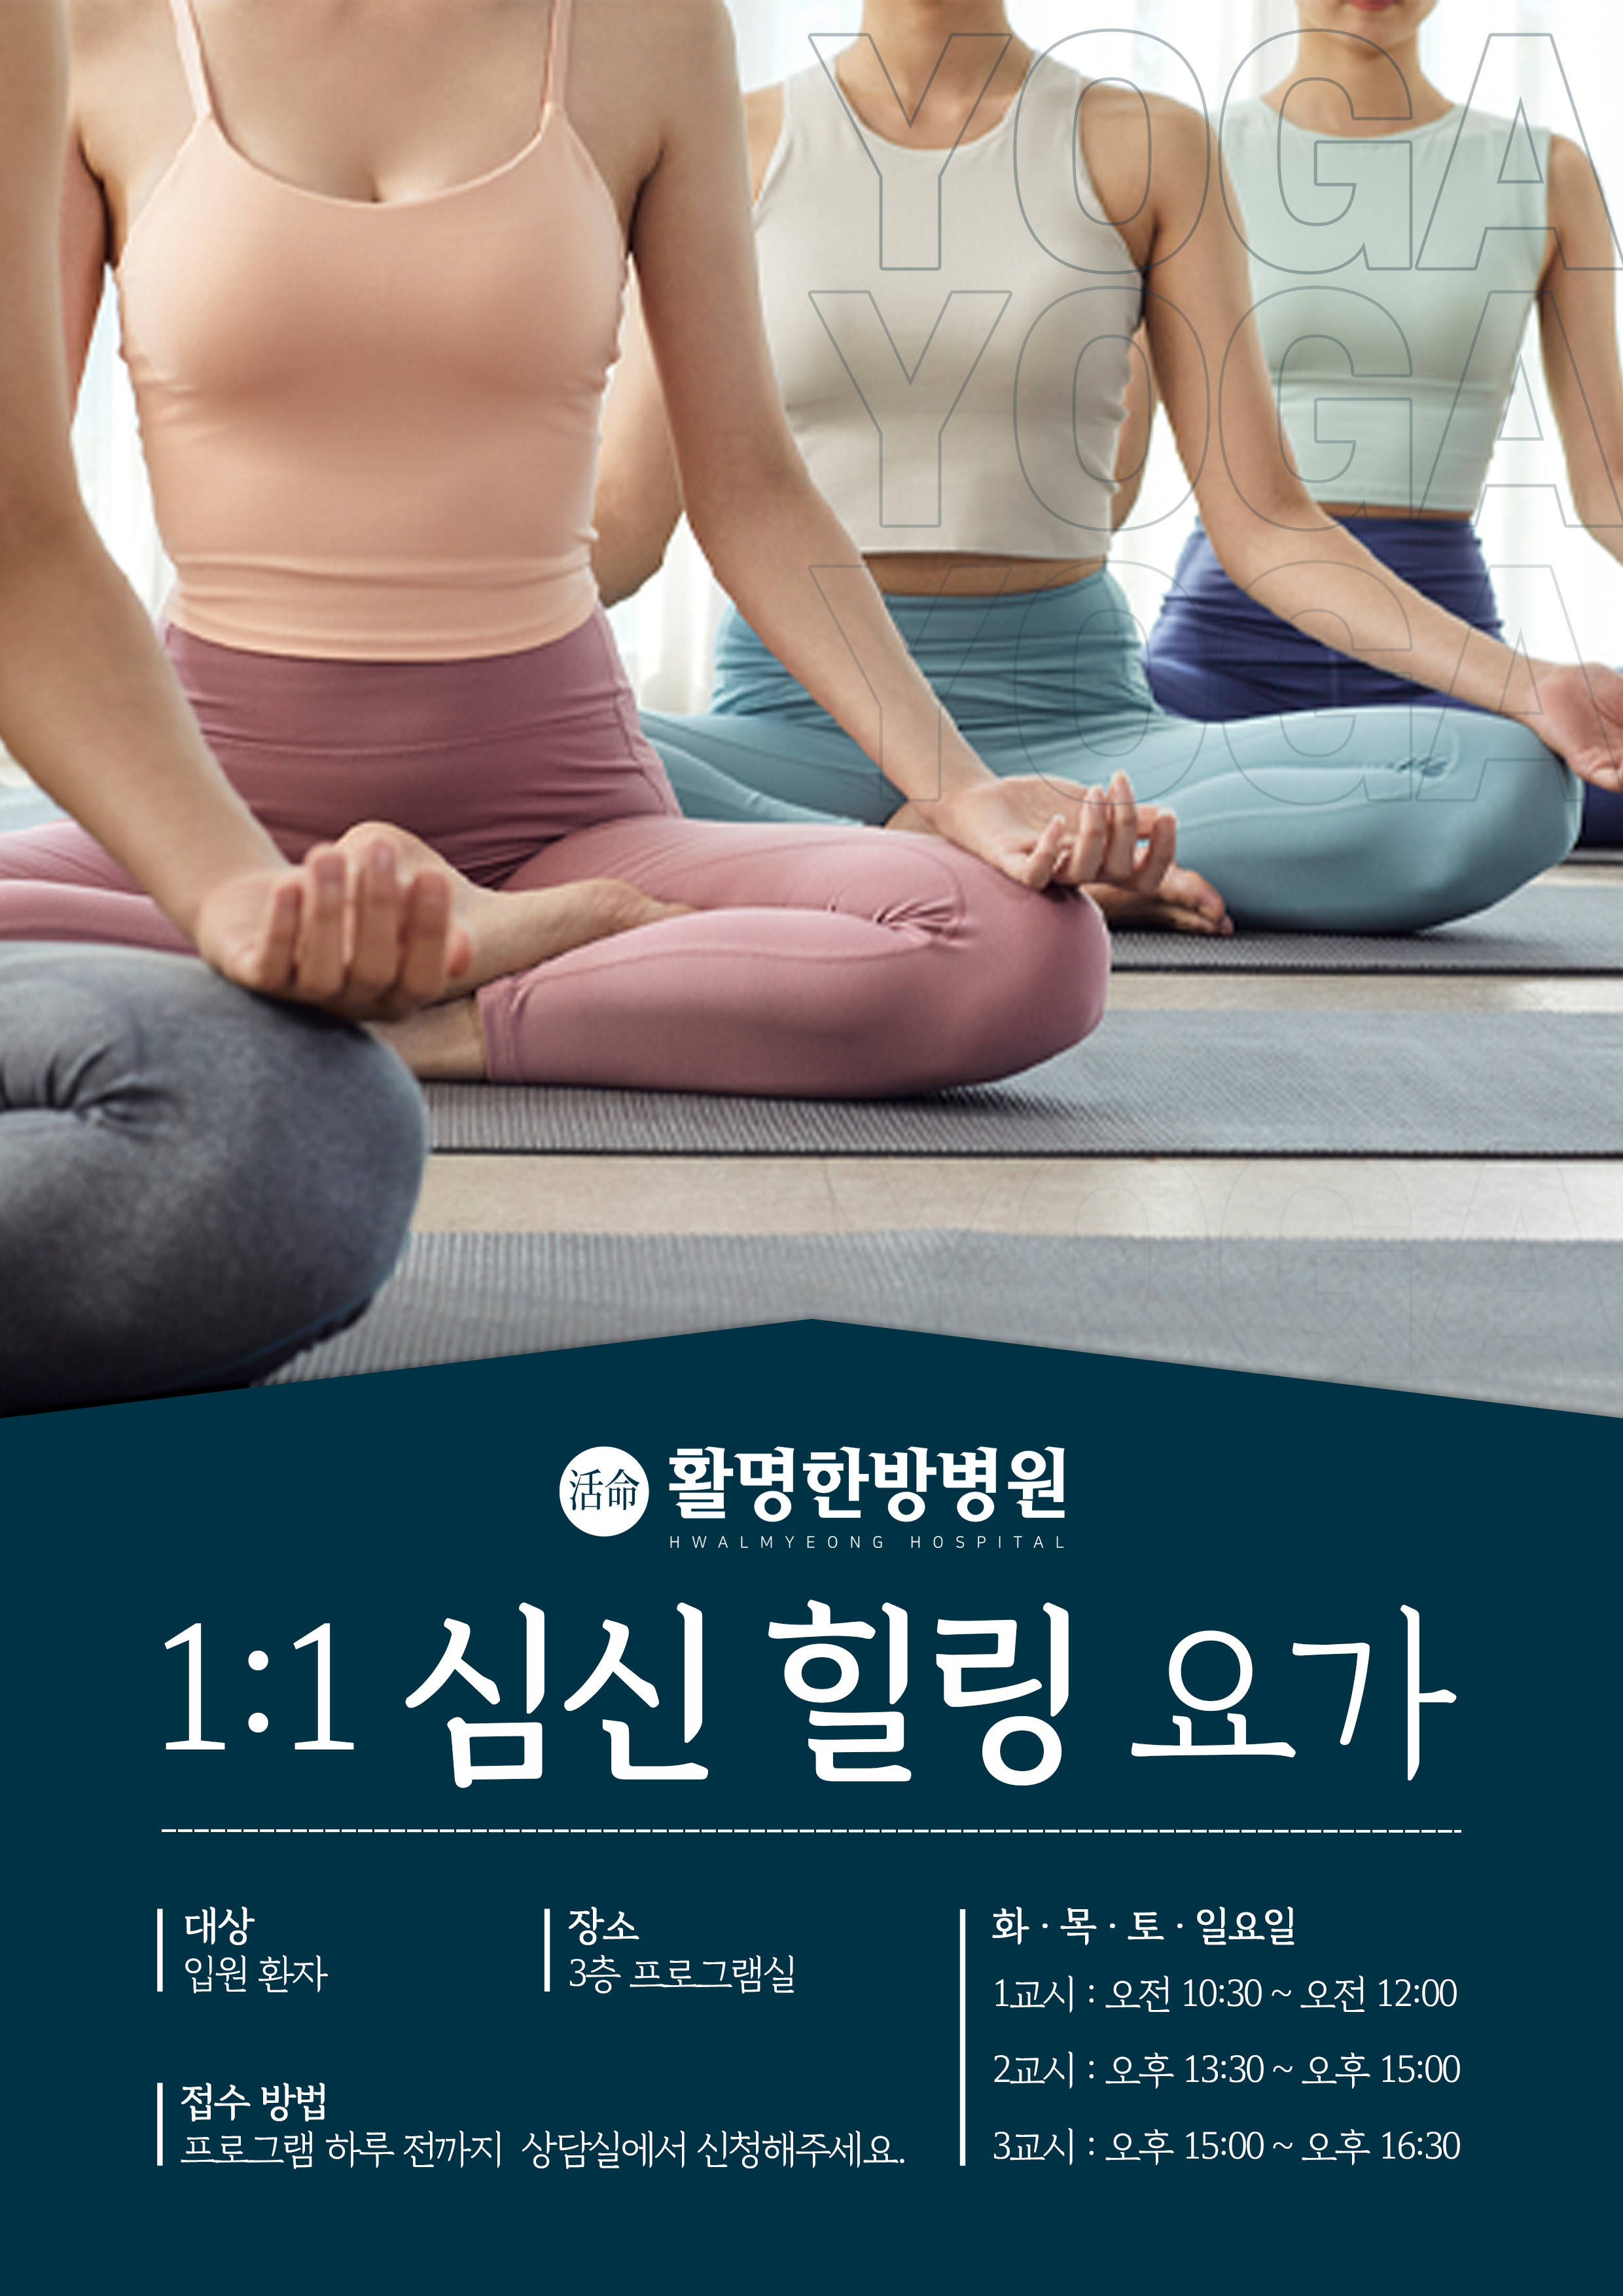 A4-yoga3.jpg